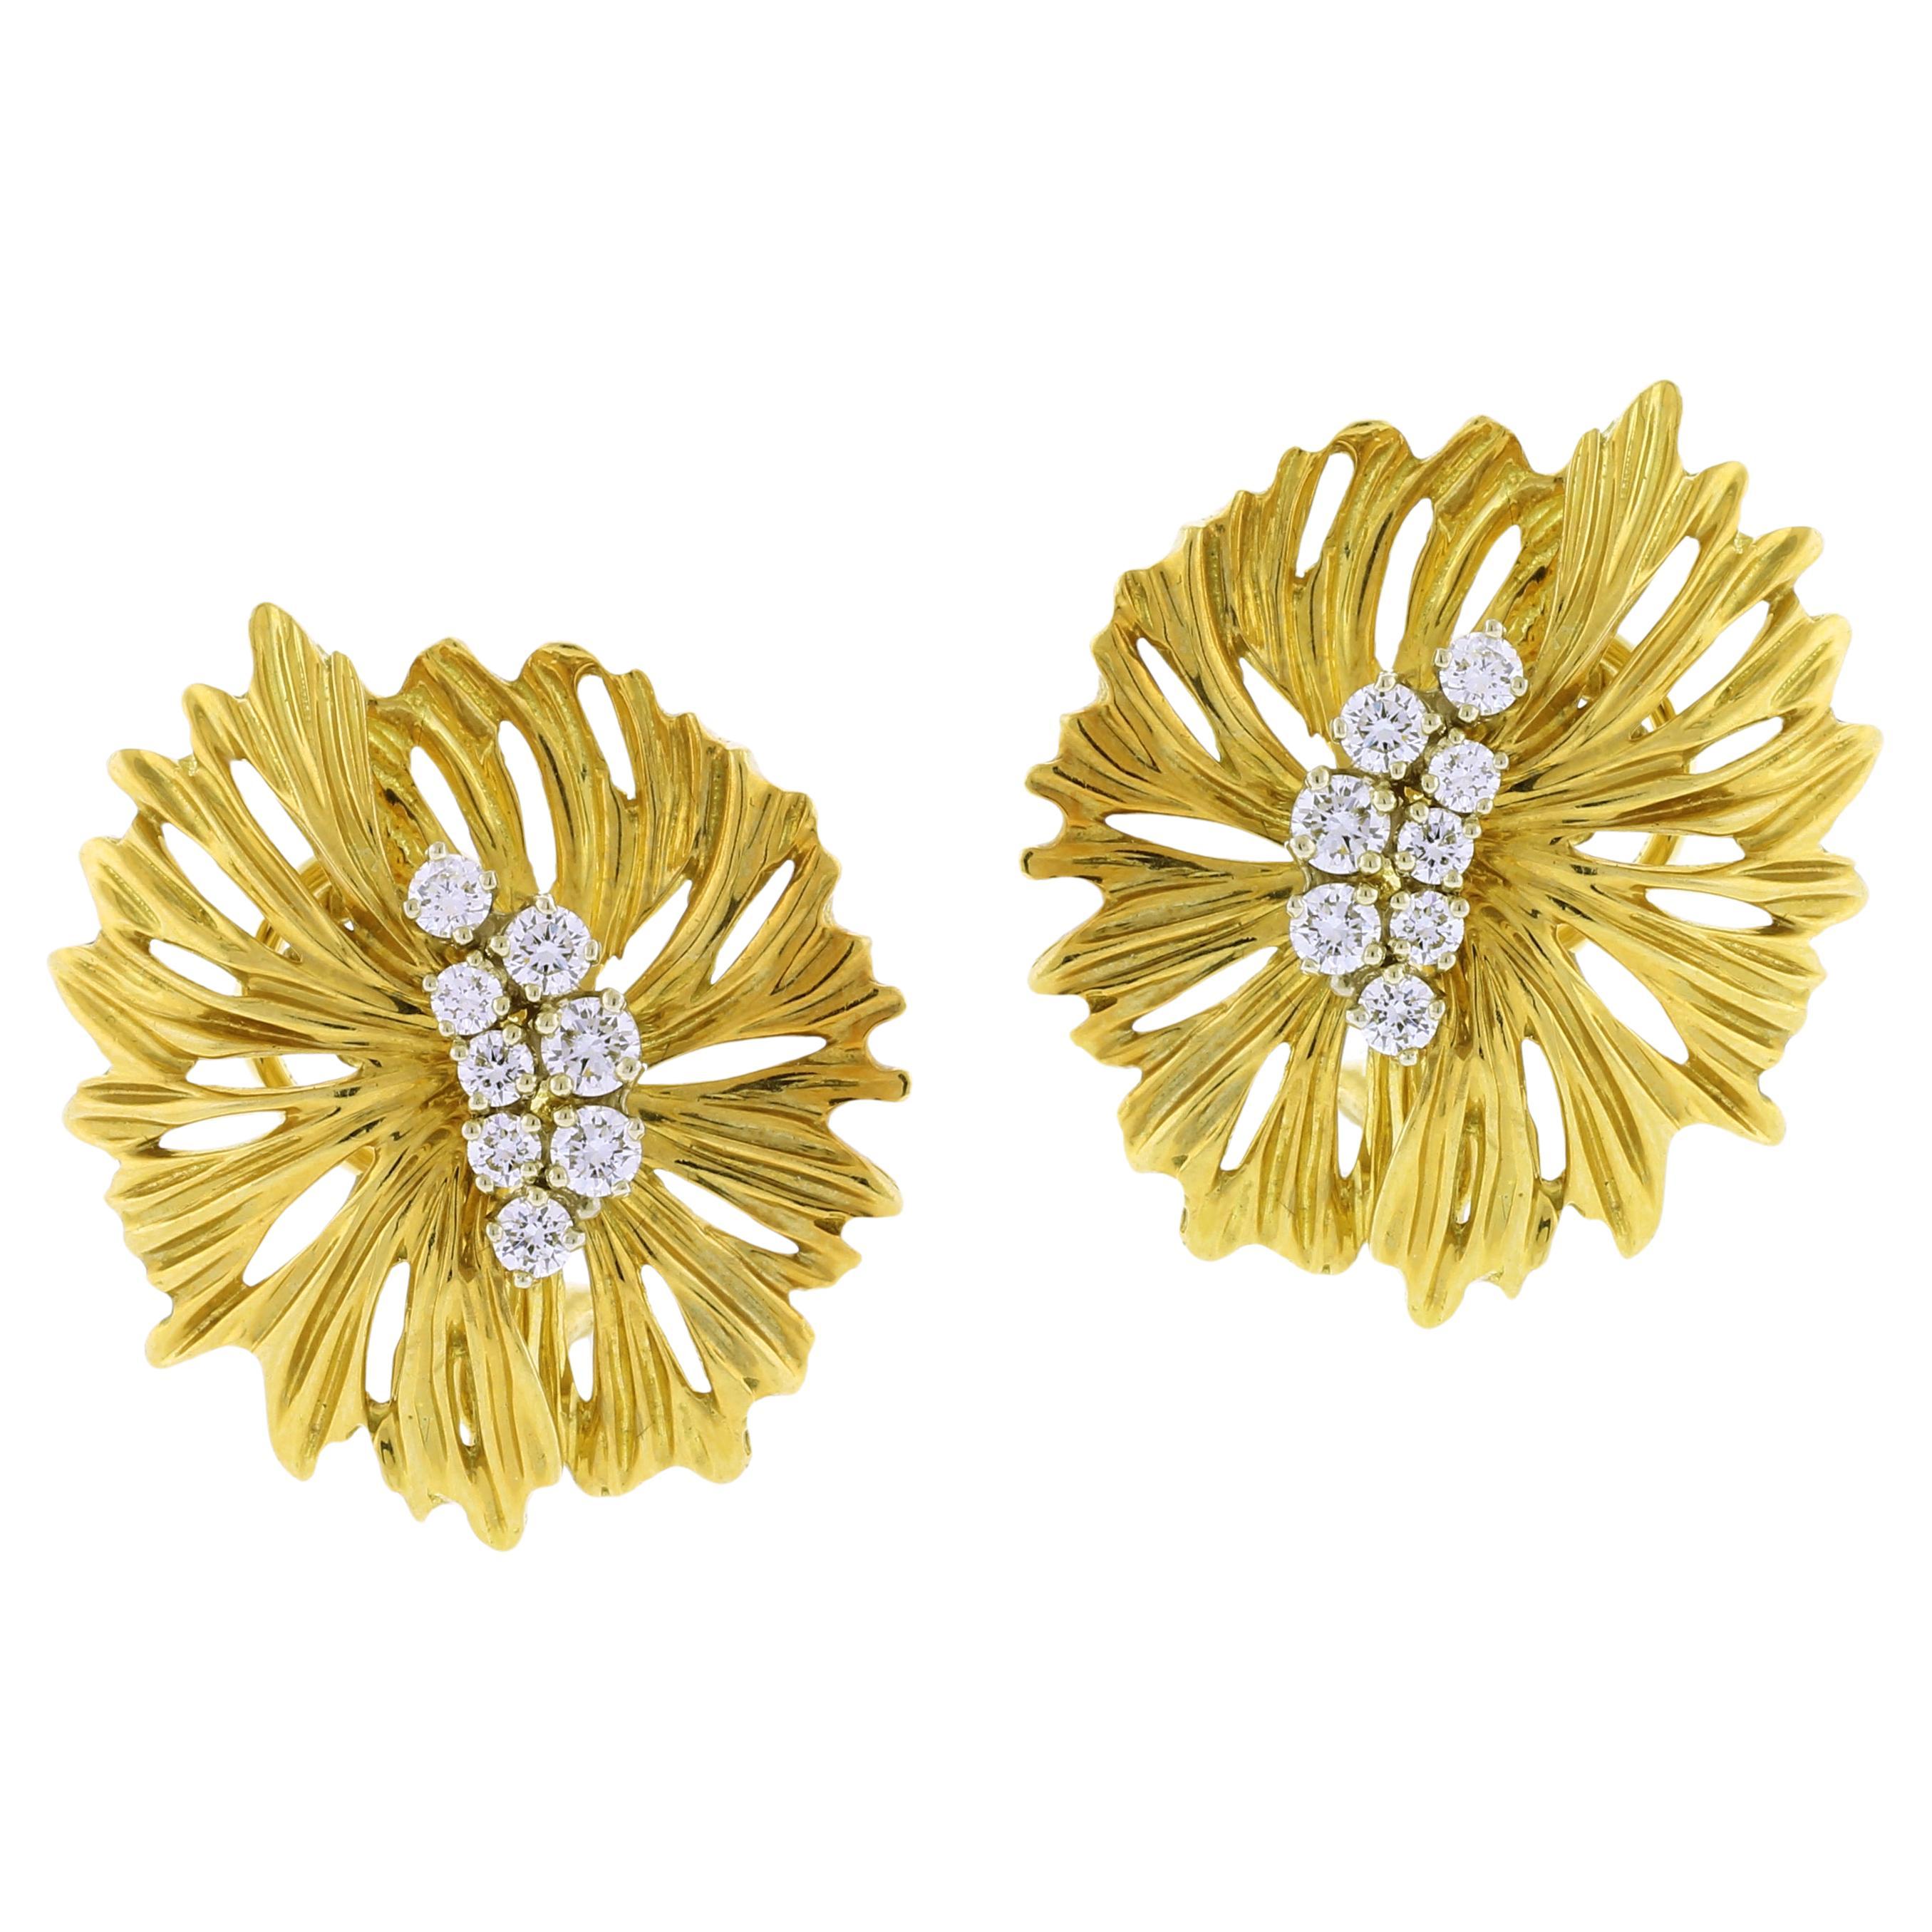 Dankner 18kt Gold and Diamond Starburst Earrings